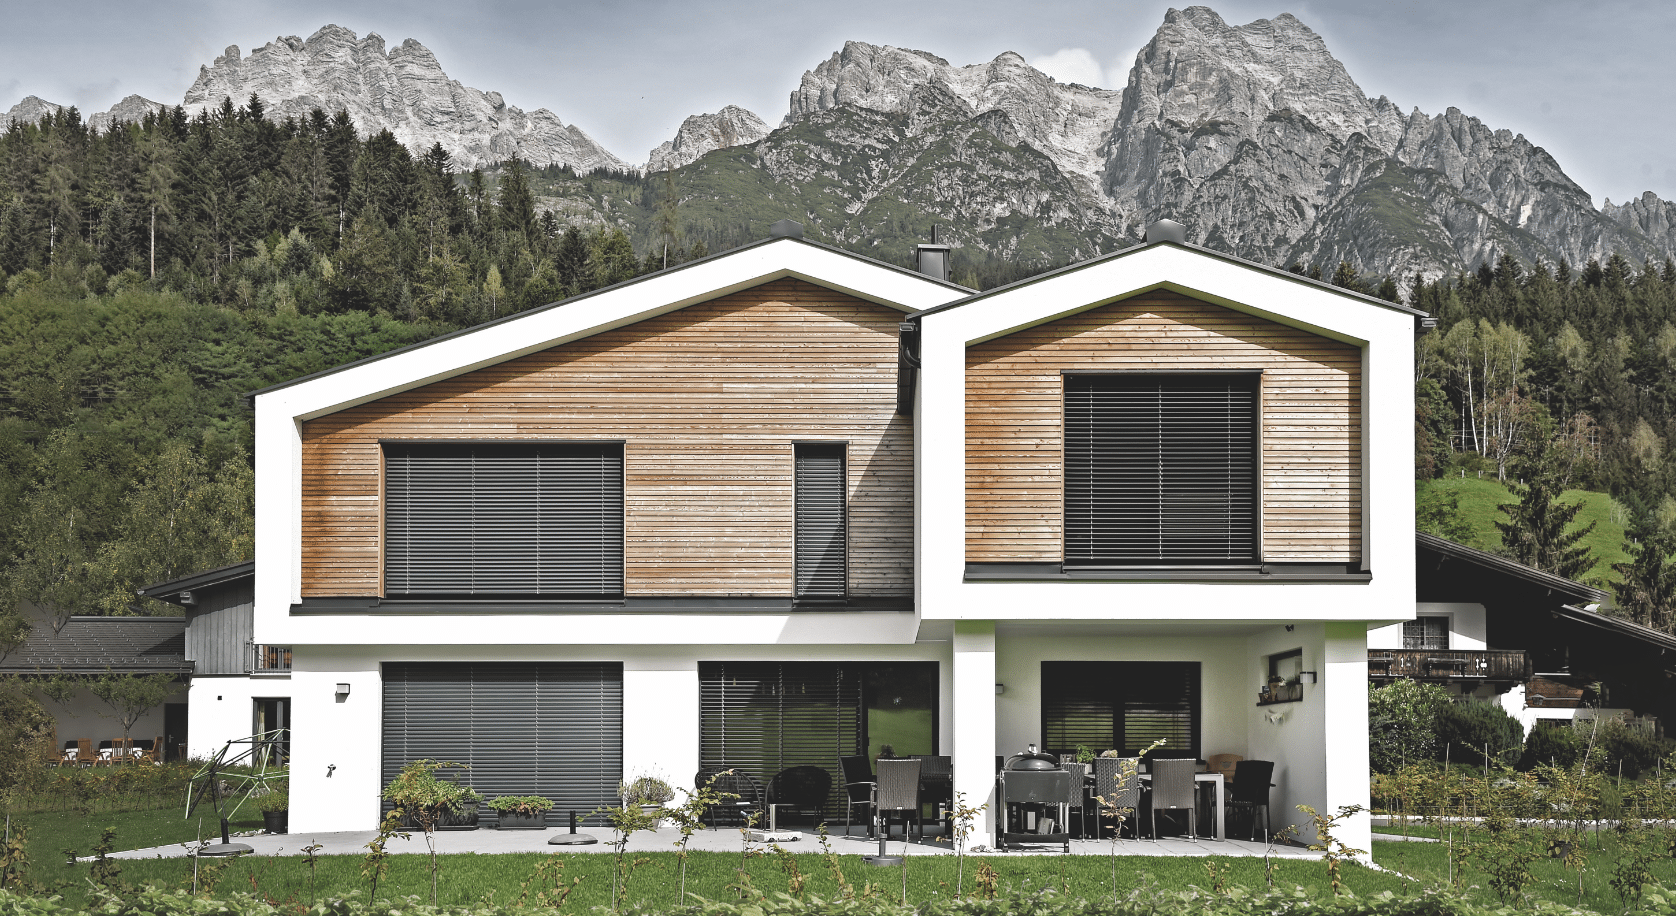 ERLER BAU GmbH zeigt ein modernes Einfamilienhaus mit Holzelementen, großen Fenstern an denen Rollläden montiert wurden und einer überdachten Terrasse mit einer Sitzgruppe.